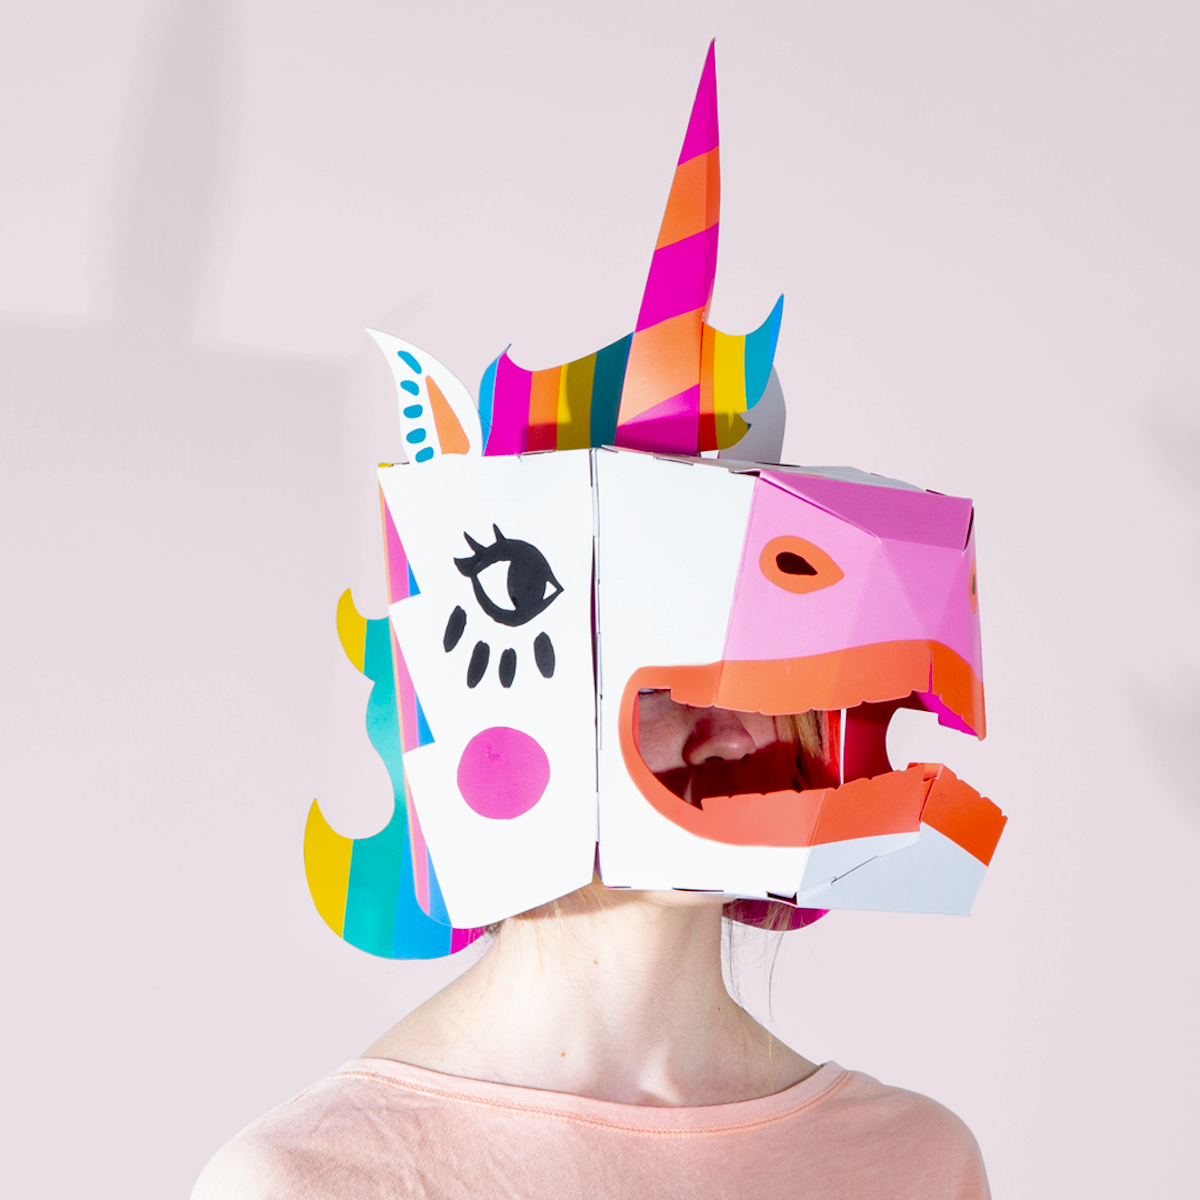 Met het OMY 3D masker Lily is niets wat het lijkt. Verras iedereen om je heen met dit vrolijke XXL 3D masker van een eenhoorn! Het masker wordt plat geleverd, maar jij kan hem zelf helemaal in elkaar zetten. VanZus.